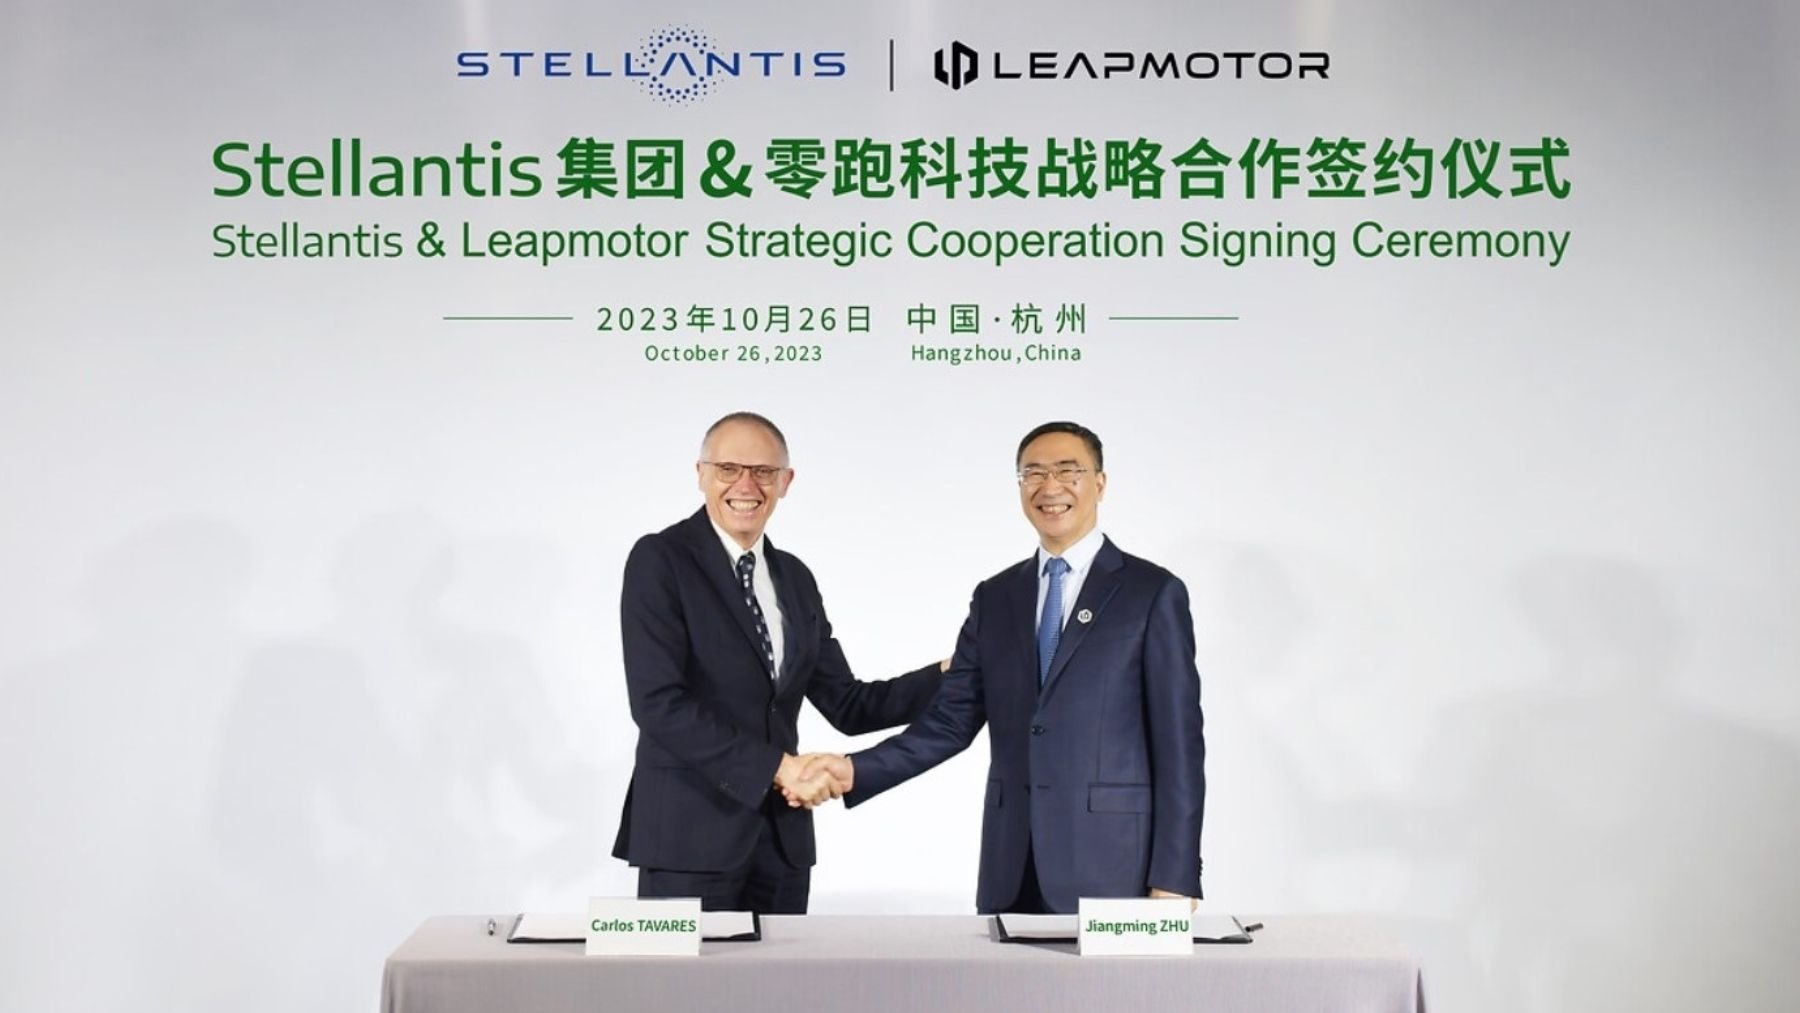 El CEO de Stellantis, Carlos Tavares, junto al CEO de Leapmotor, Zhu Jiangming.